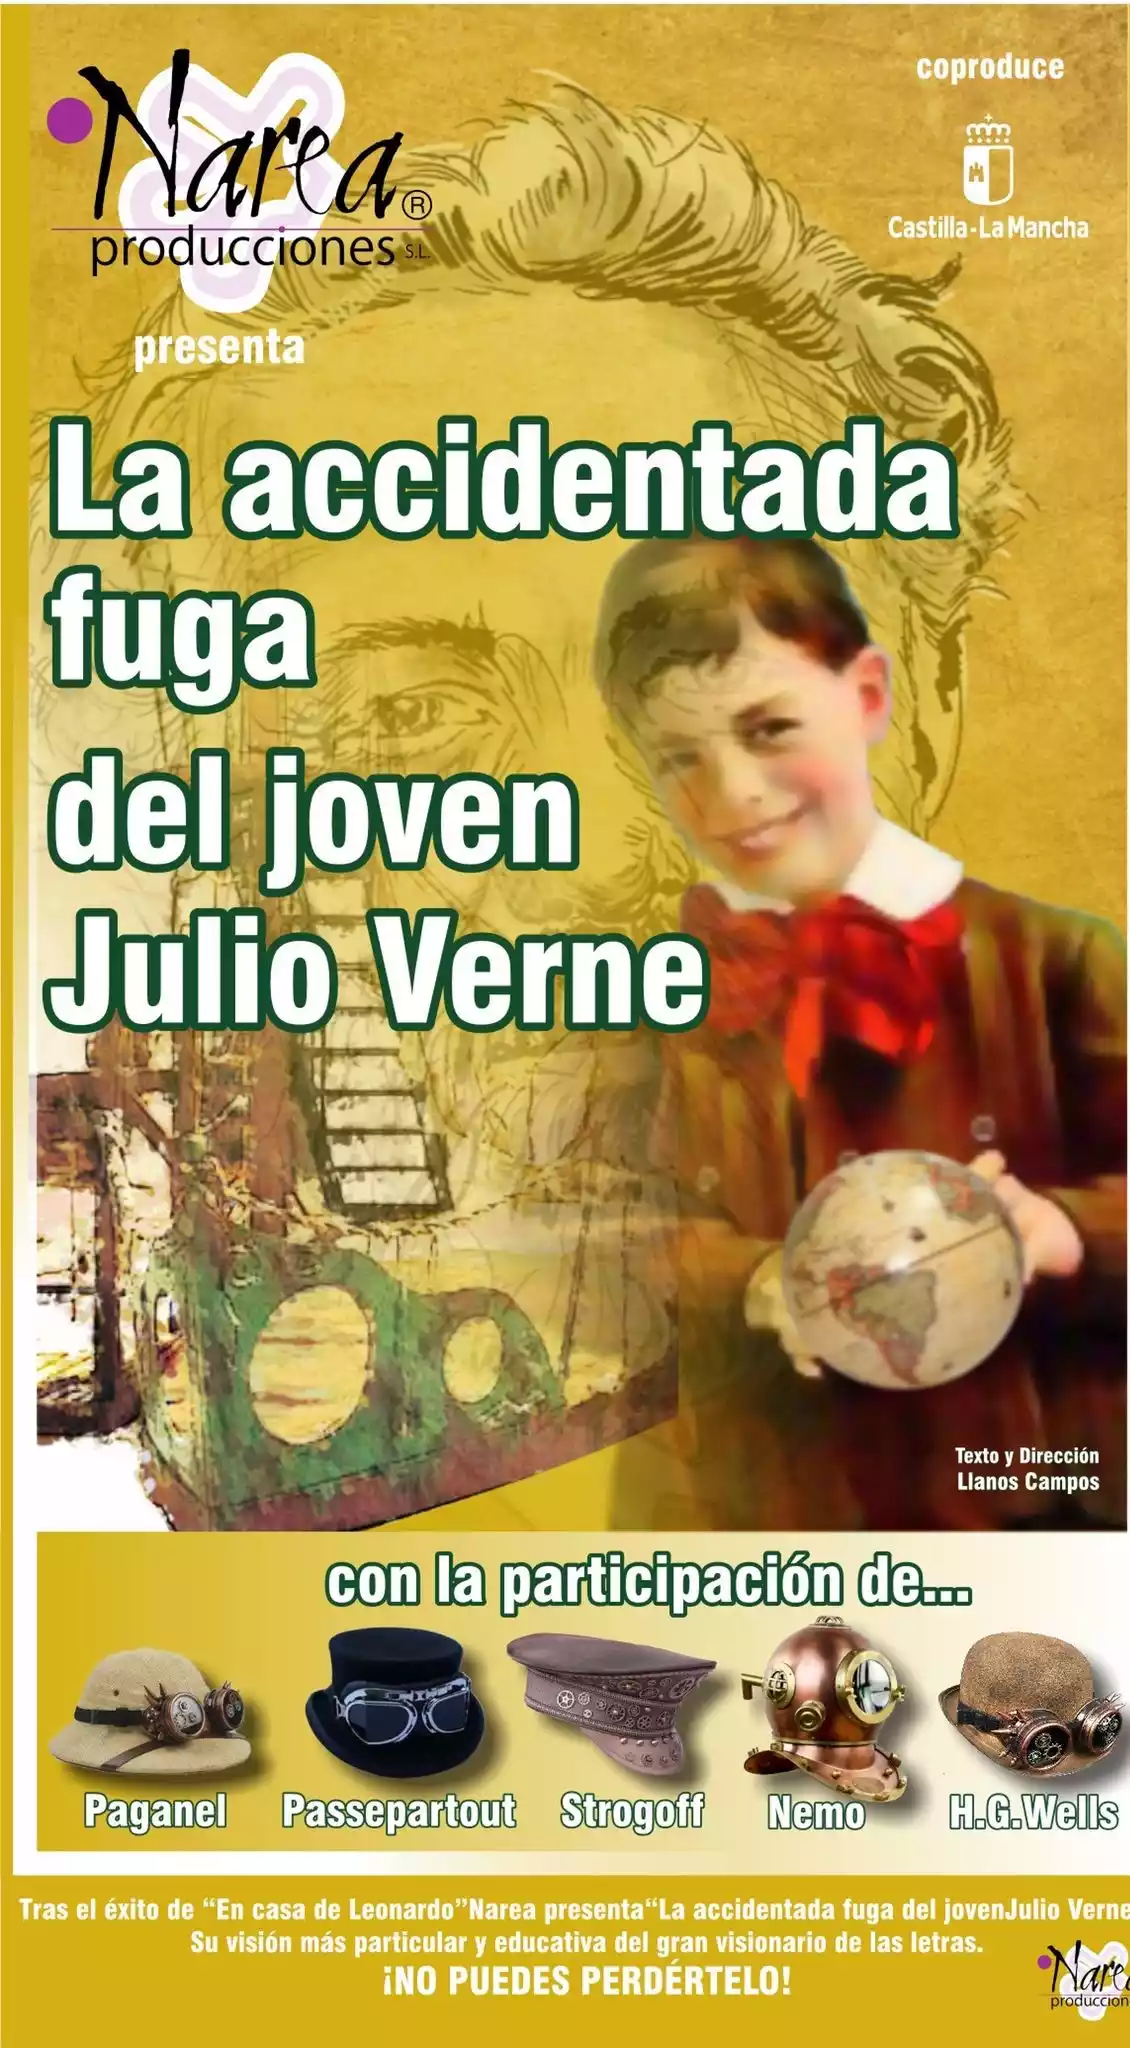 La accidentada fuga del joven Julio Verne. illescasaldia.com